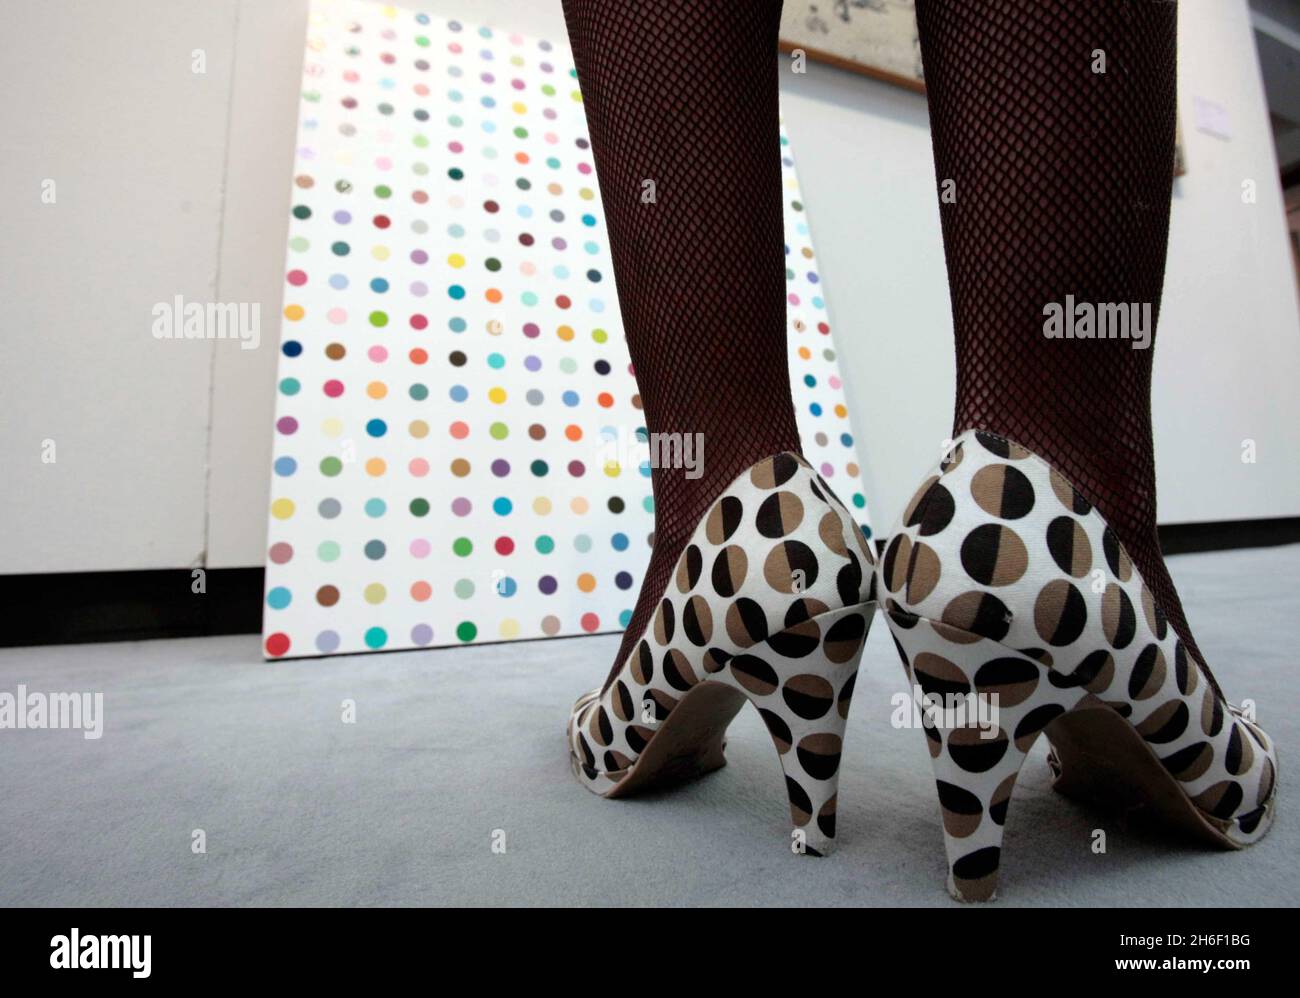 Damien Hirsts 'Isopropamid Iodide', glänzende Haushaltsfarbe auf Leinwand. Esitmated soll für 250,000 - 350,000 Pfund eines der Kunstwerke verkaufen, die nächste Woche, am 2. Januar 2007, von Christies in London versteigert werden. Stockfoto